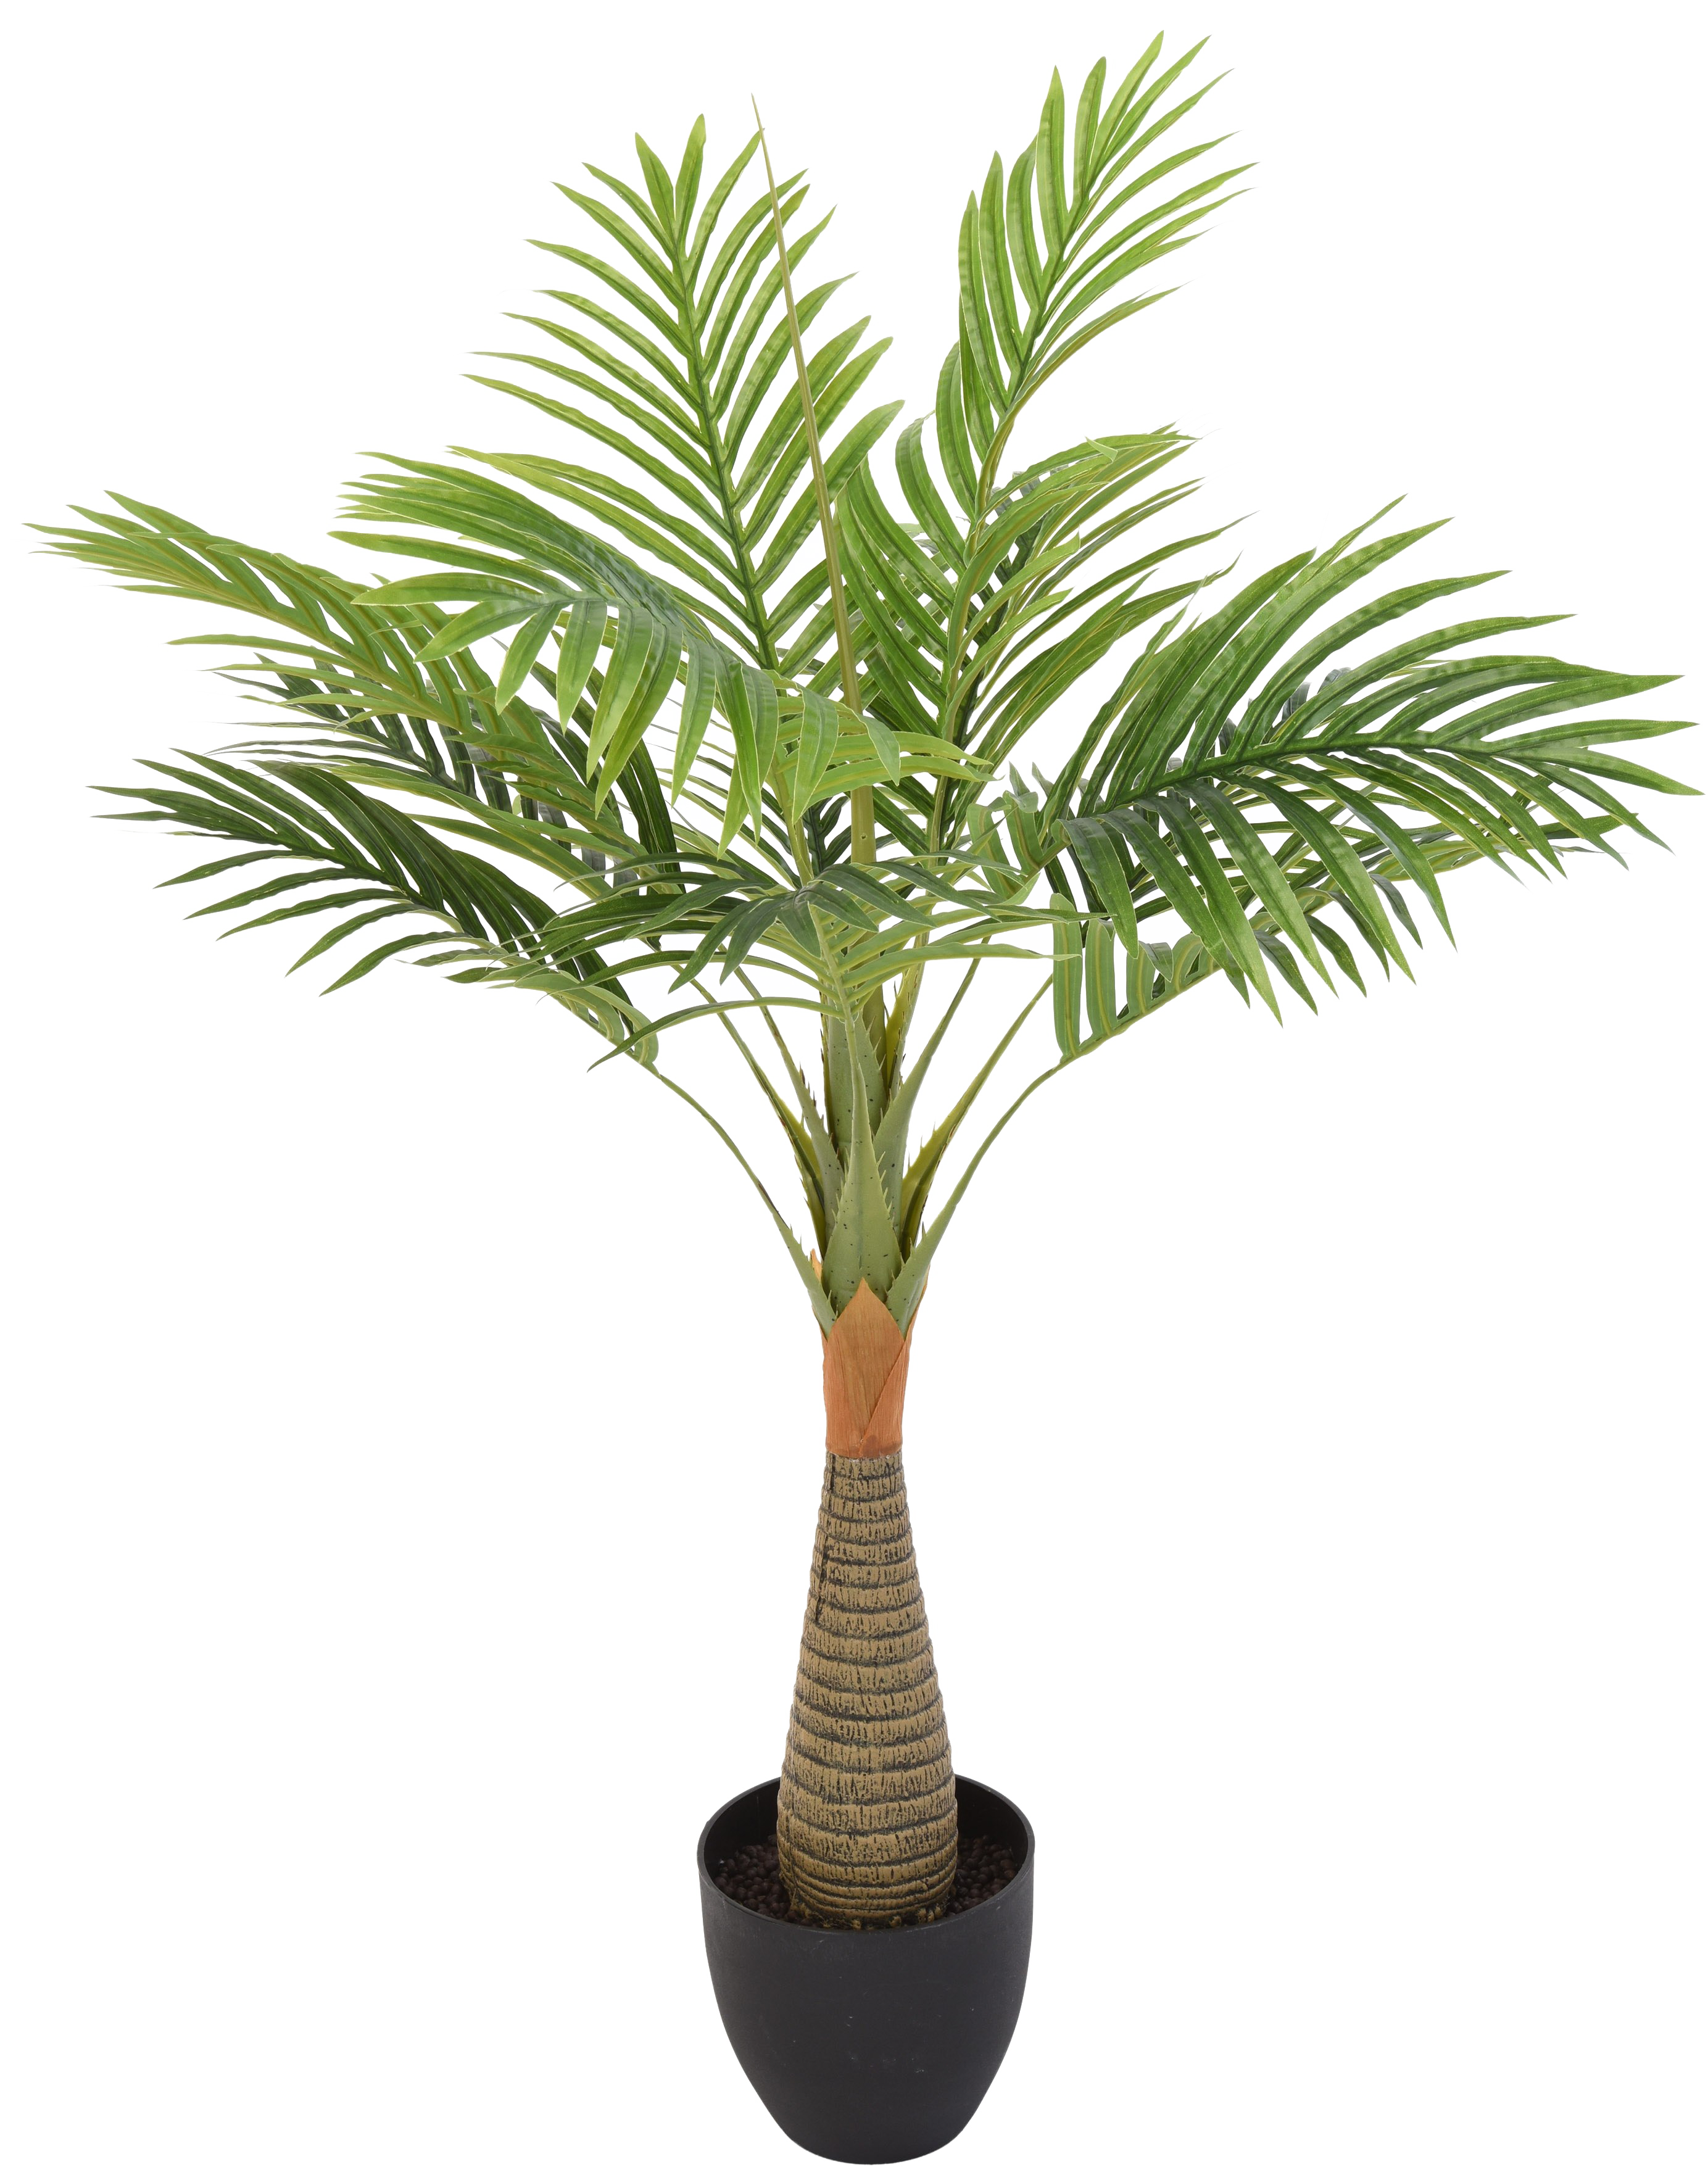 Fond transparent de feuille darbre palmier